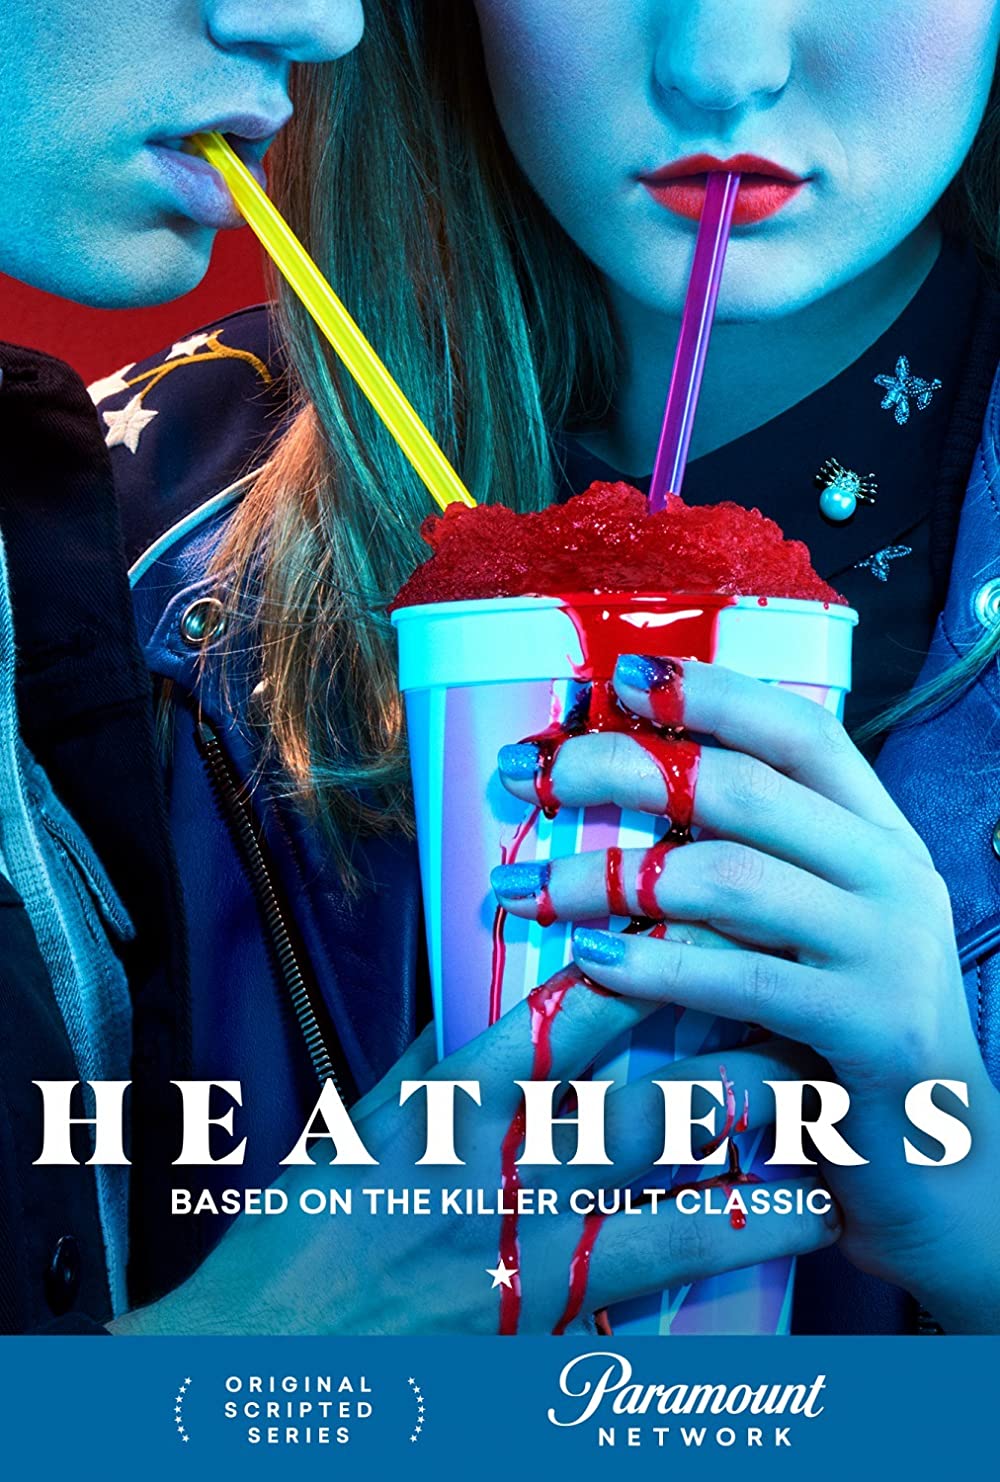 Heathers: Escuela de Jóvenes Asesinos